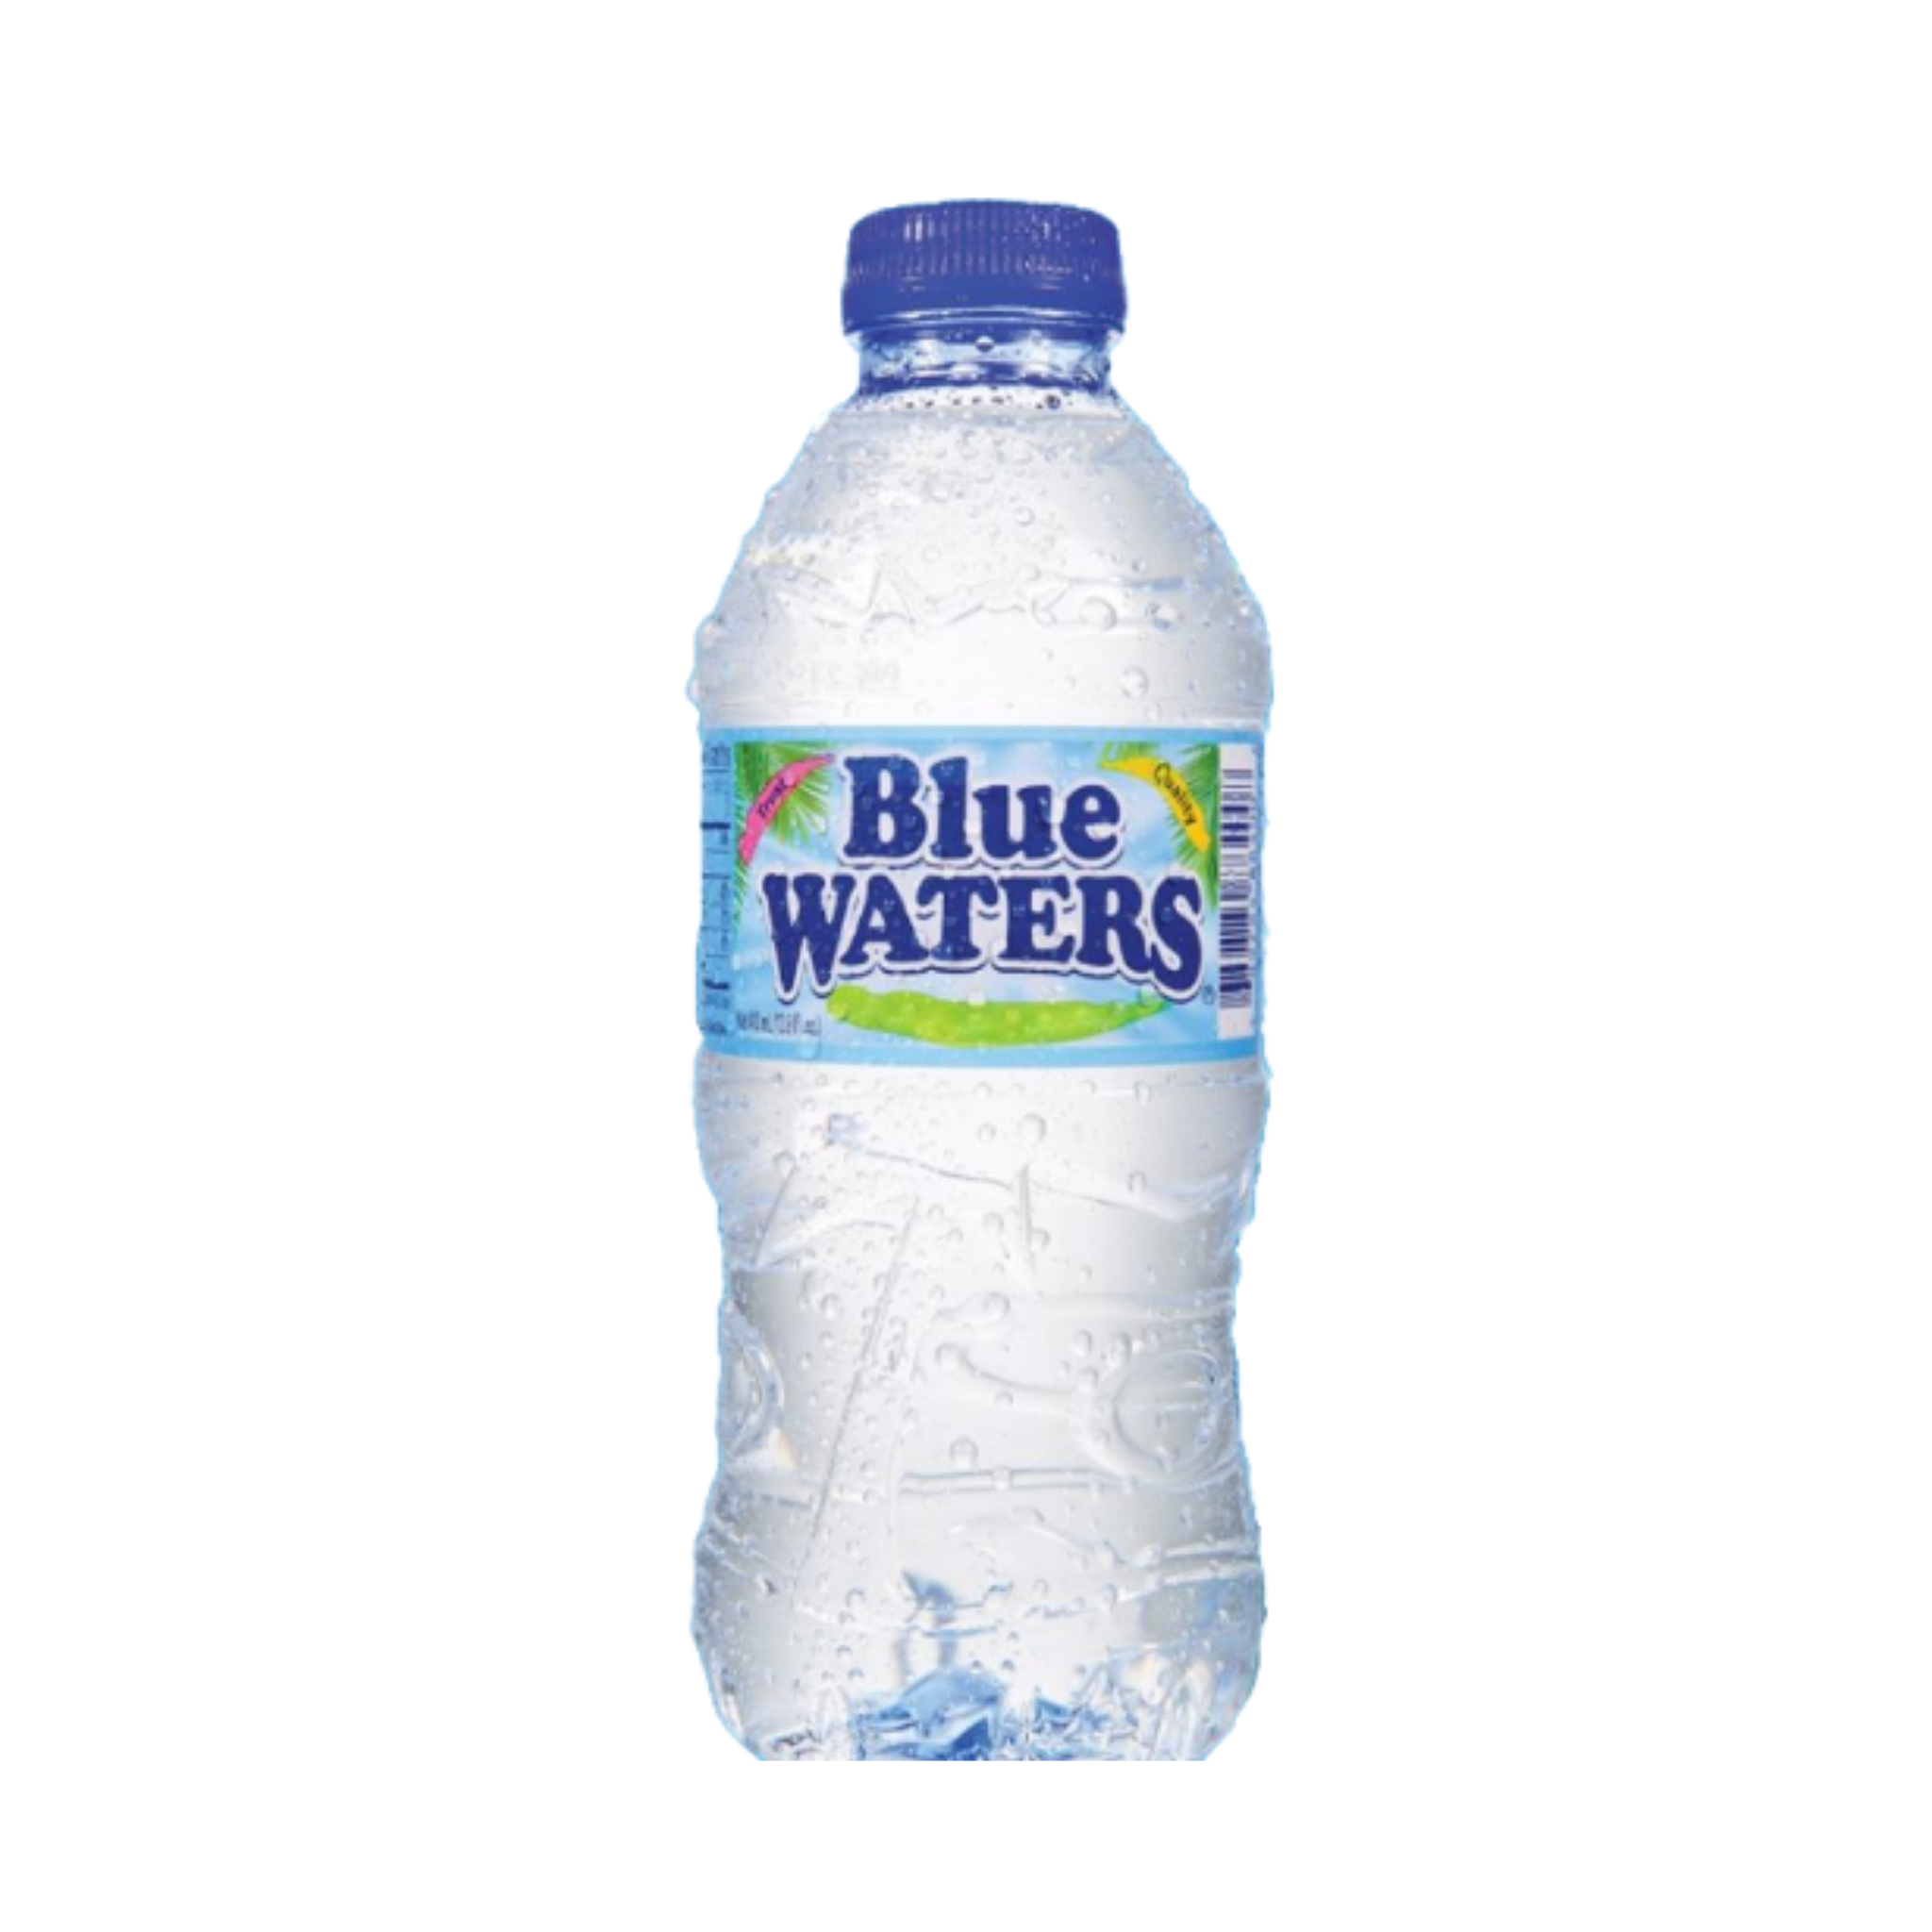 Купить синюю воду. Blue Water вода. Бутылка для воды. Blue Water Bottle. Вода в голубой бутылке.